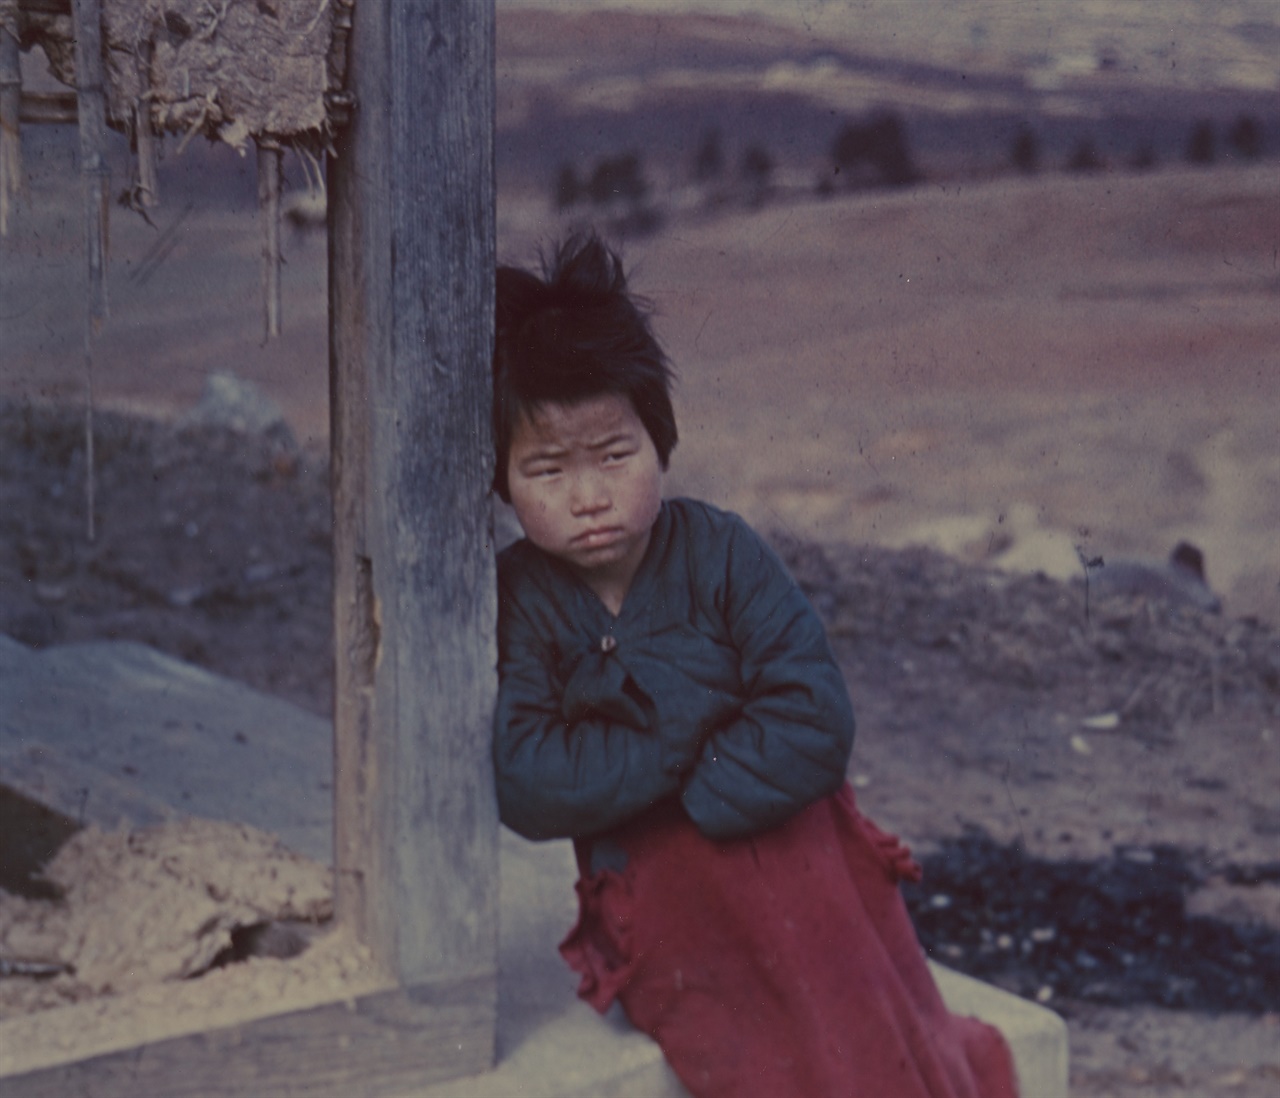  한 소녀가 전란으로 허물어진 집 섬돌에 앉아 우울한 표정을 짓고 있다, 당시 컬러 사진은 무척 귀했는데 NARA에 몇 장 소장돼 있었다(1951. 3. 1. 전주). 